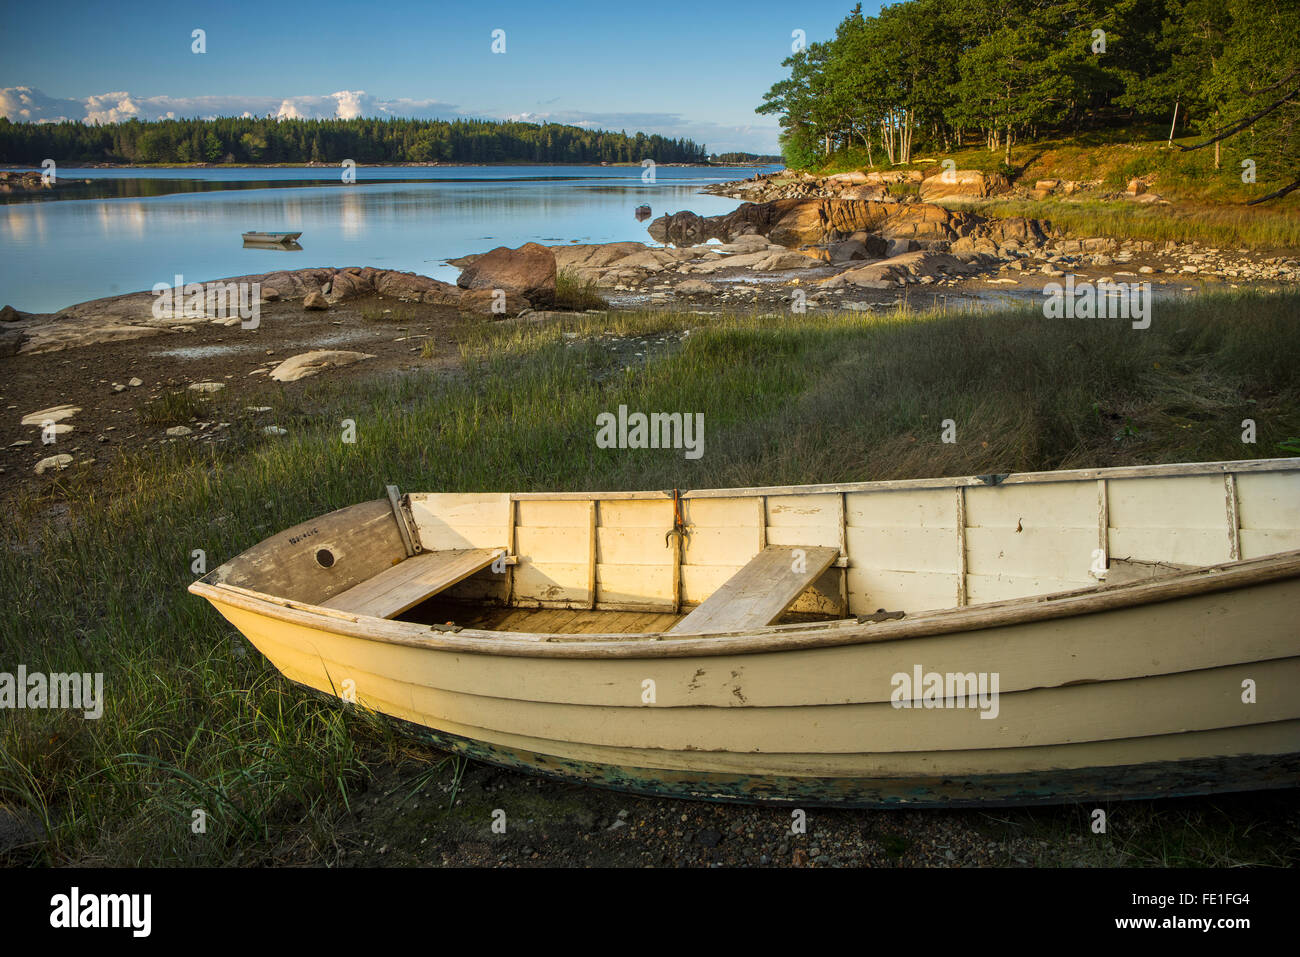 Isla venados, Maine: bote de remos de madera en una tranquila cala de la isla Venados Foto de stock